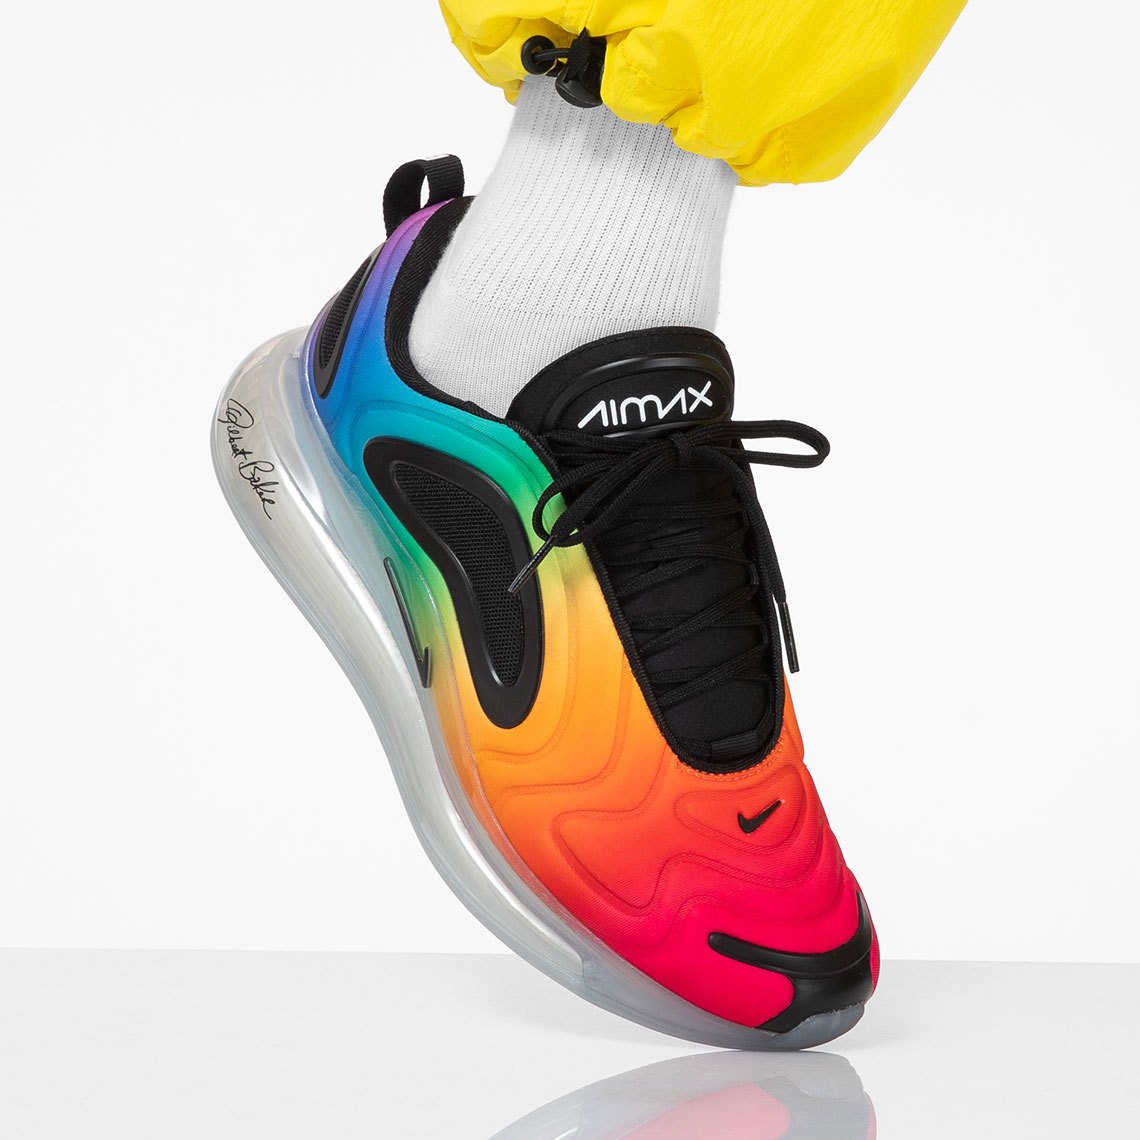 Une Sneaker De Nike Affiche Les Couleurs De L'arc-en-ciel De La Marque.